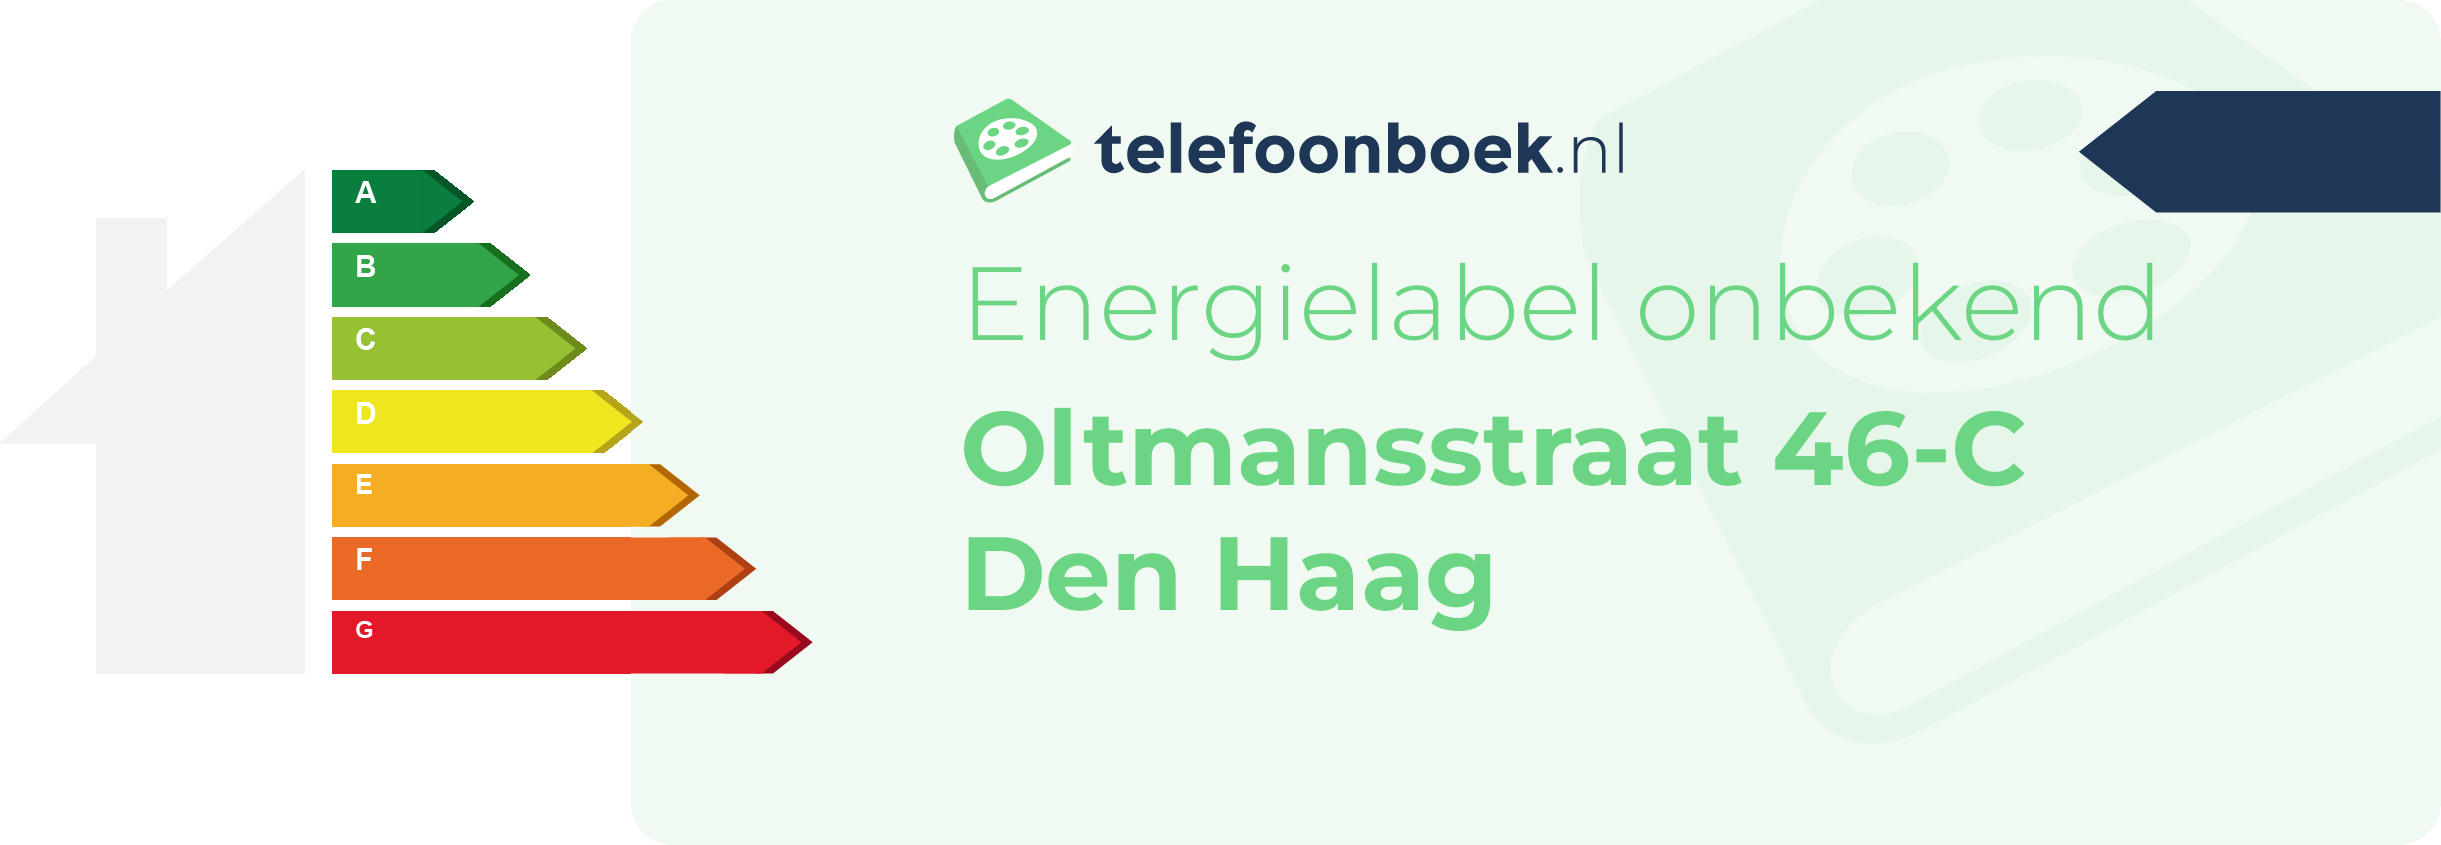 Energielabel Oltmansstraat 46-C Den Haag